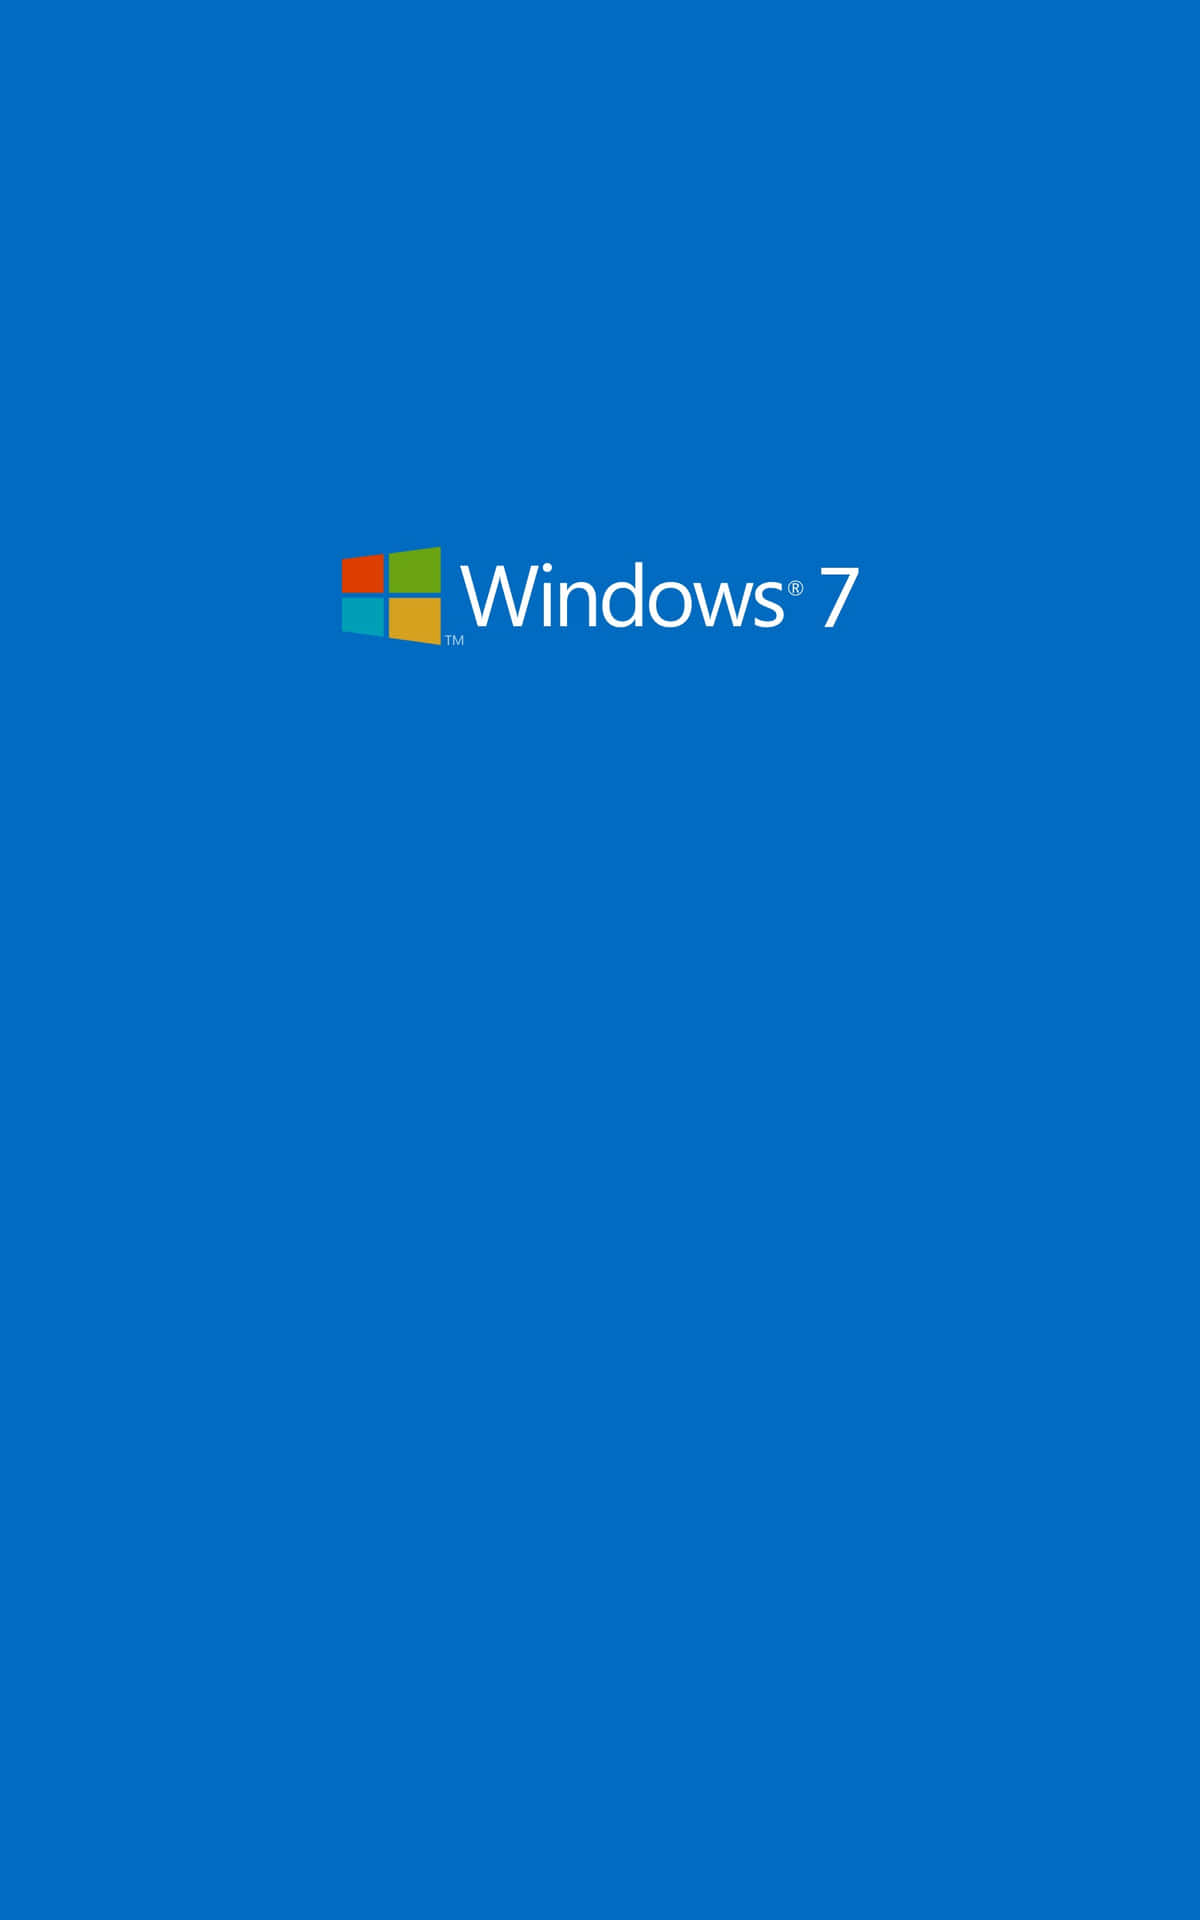 Genießensie Die Herrlichen Funktionen Von Windows 7.